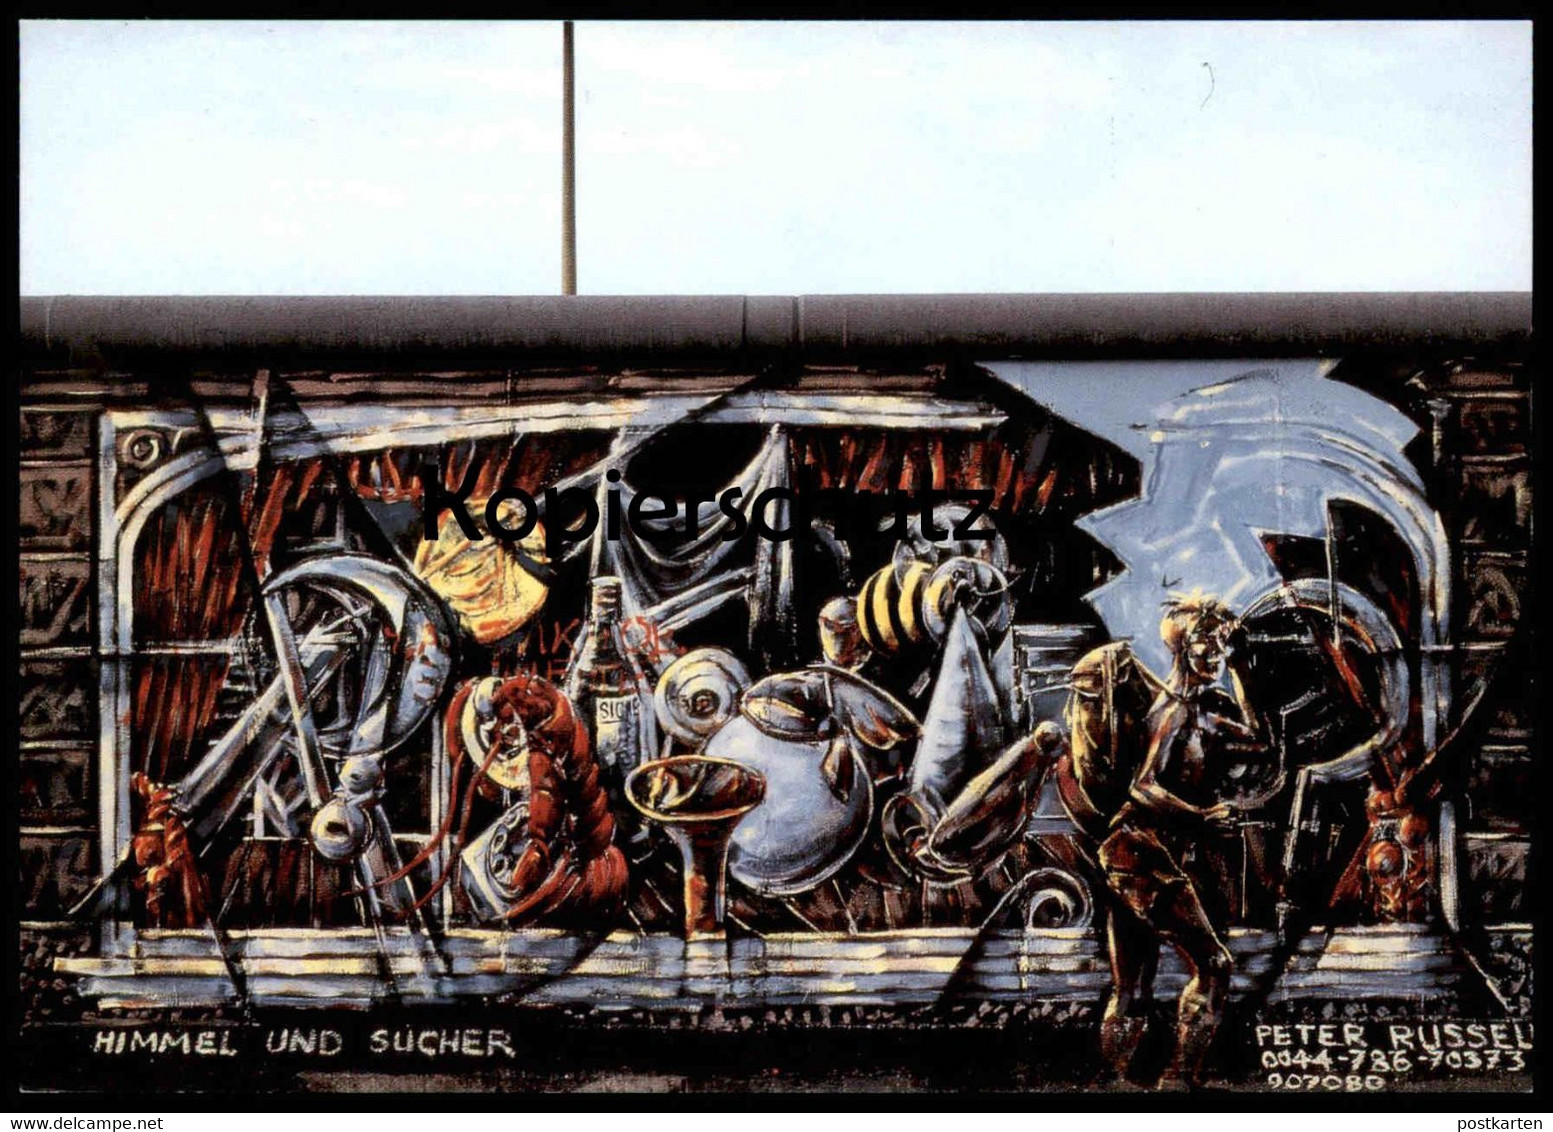 ÄLTERE POSTKARTE PETER RUSSELL HIMMEL UND SUCHER BERLINER MAUER THE WALL LE MUR BERLIN Art Postcard Cpa AK Ansichtskarte - Berlin Wall